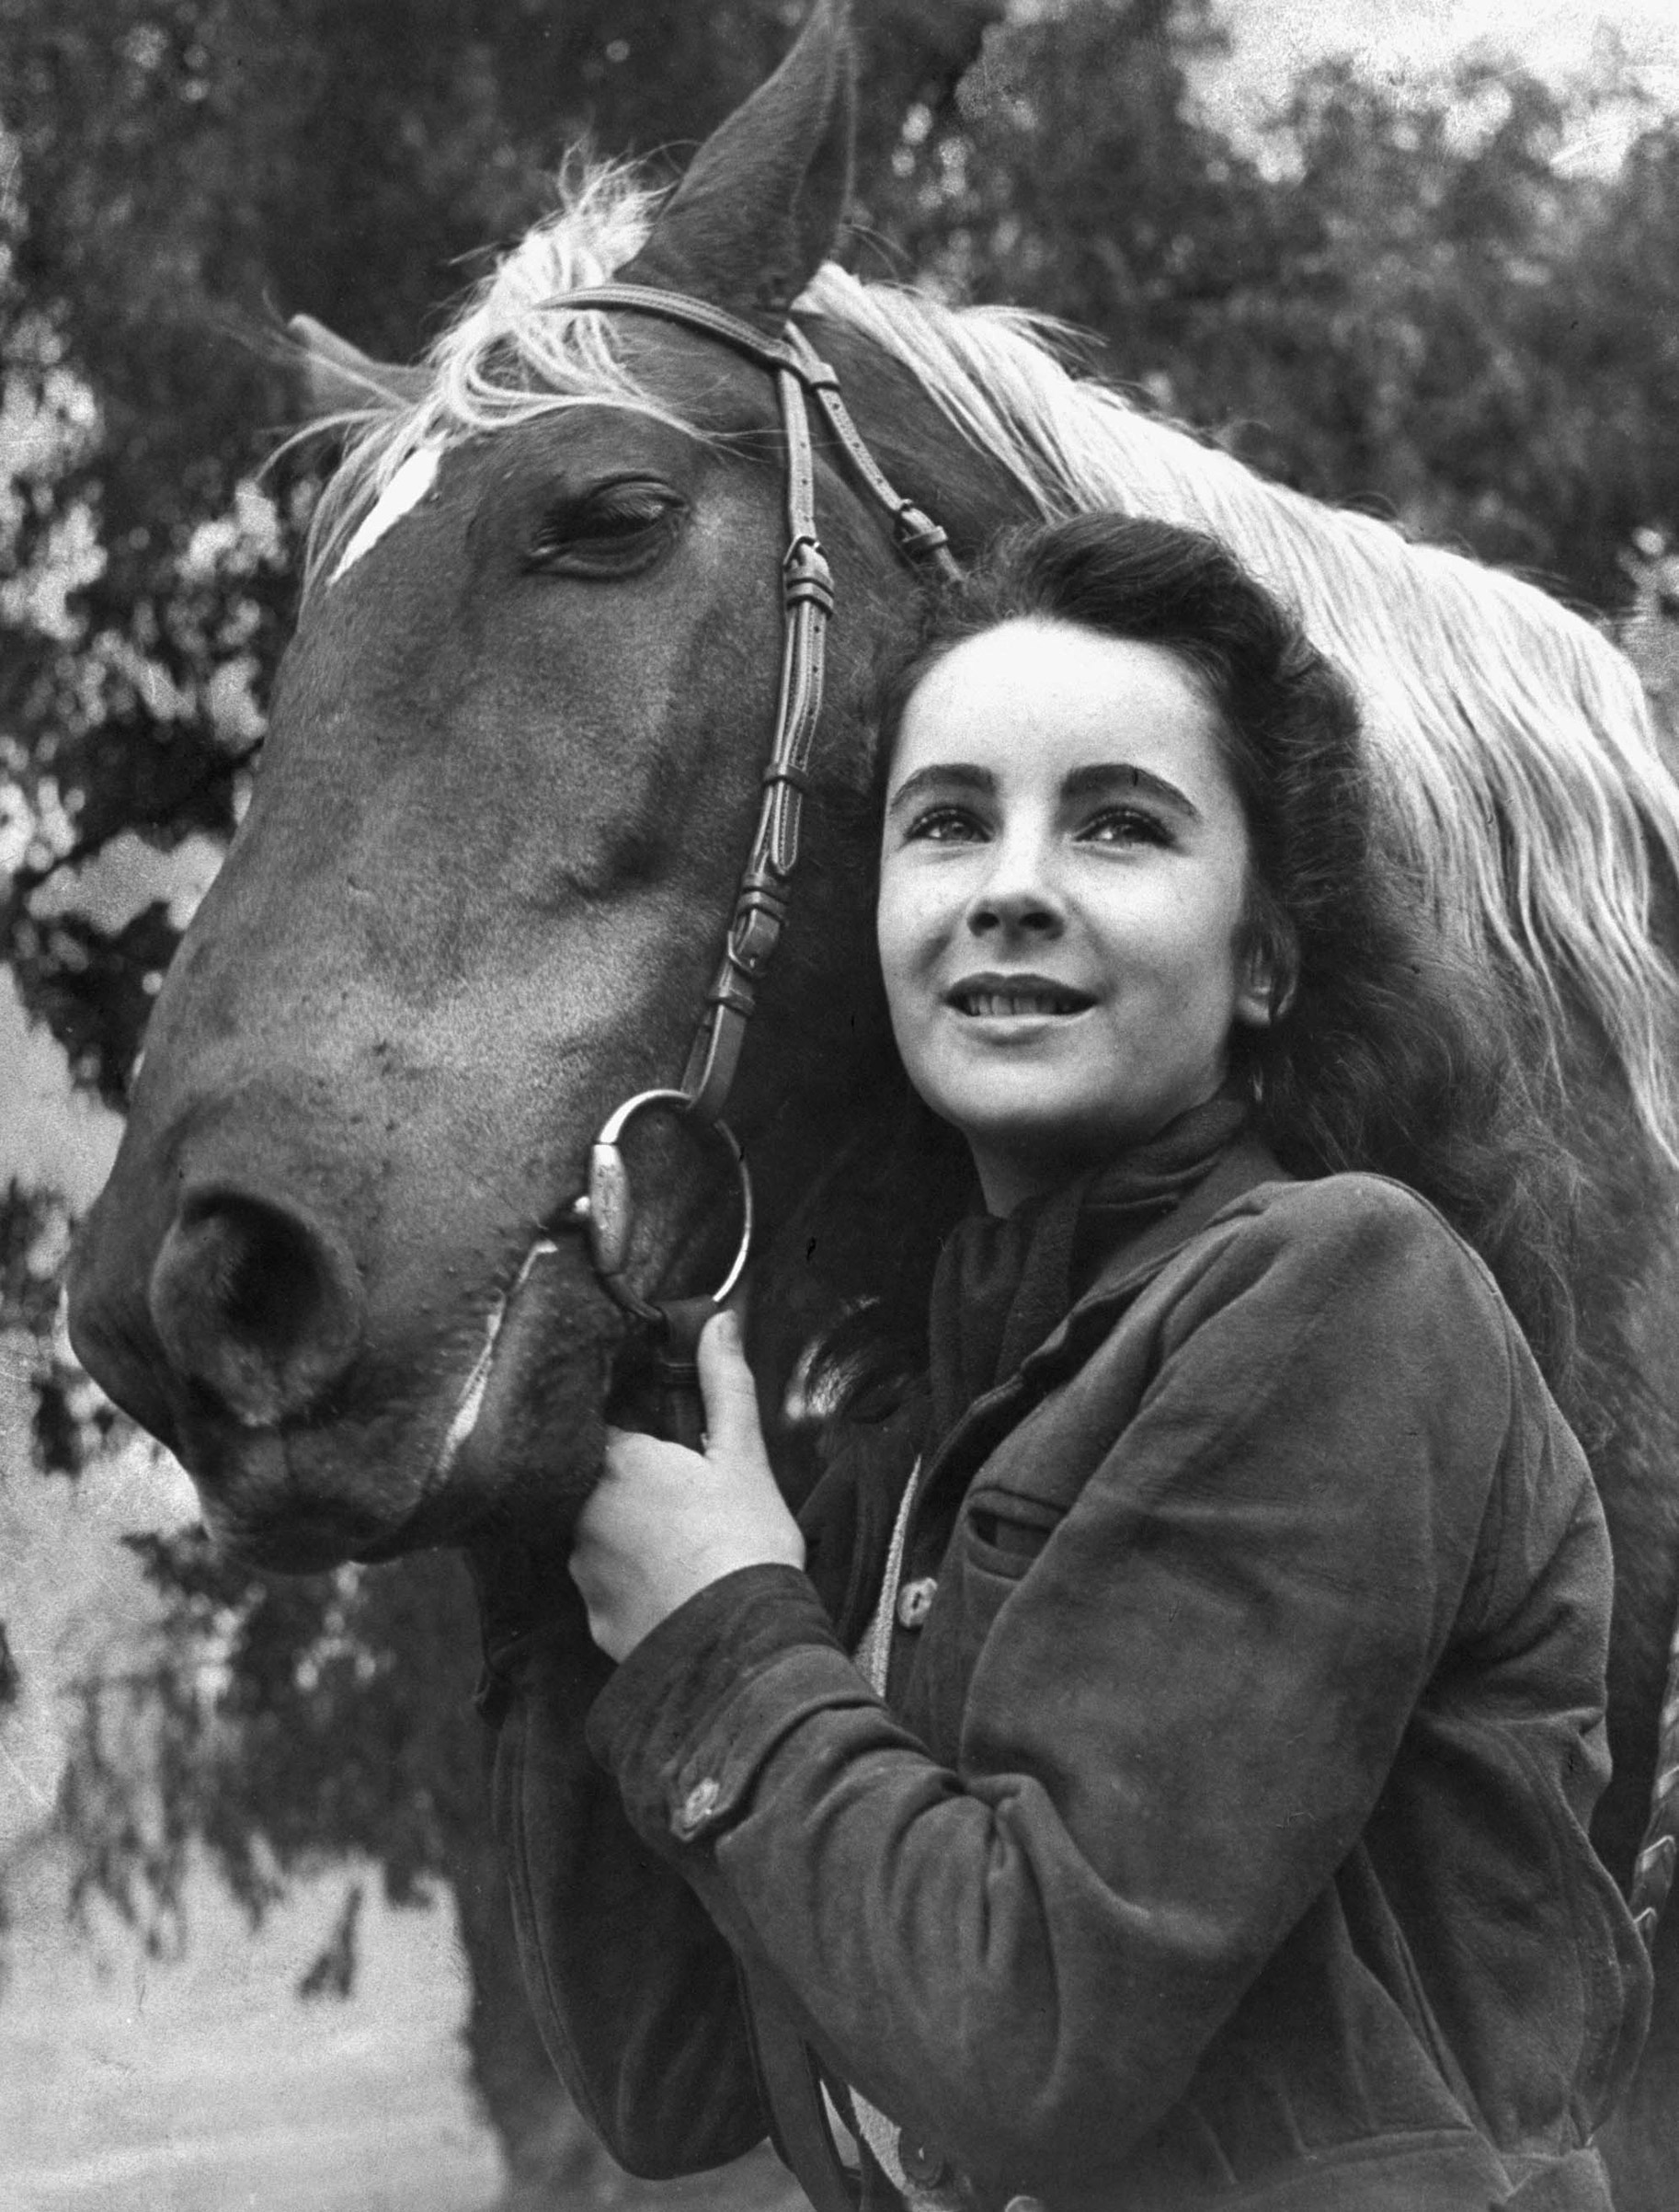 Elizabeth Taylor posing with saddle horse after her smash movie debut in "National Velvet," 1945.